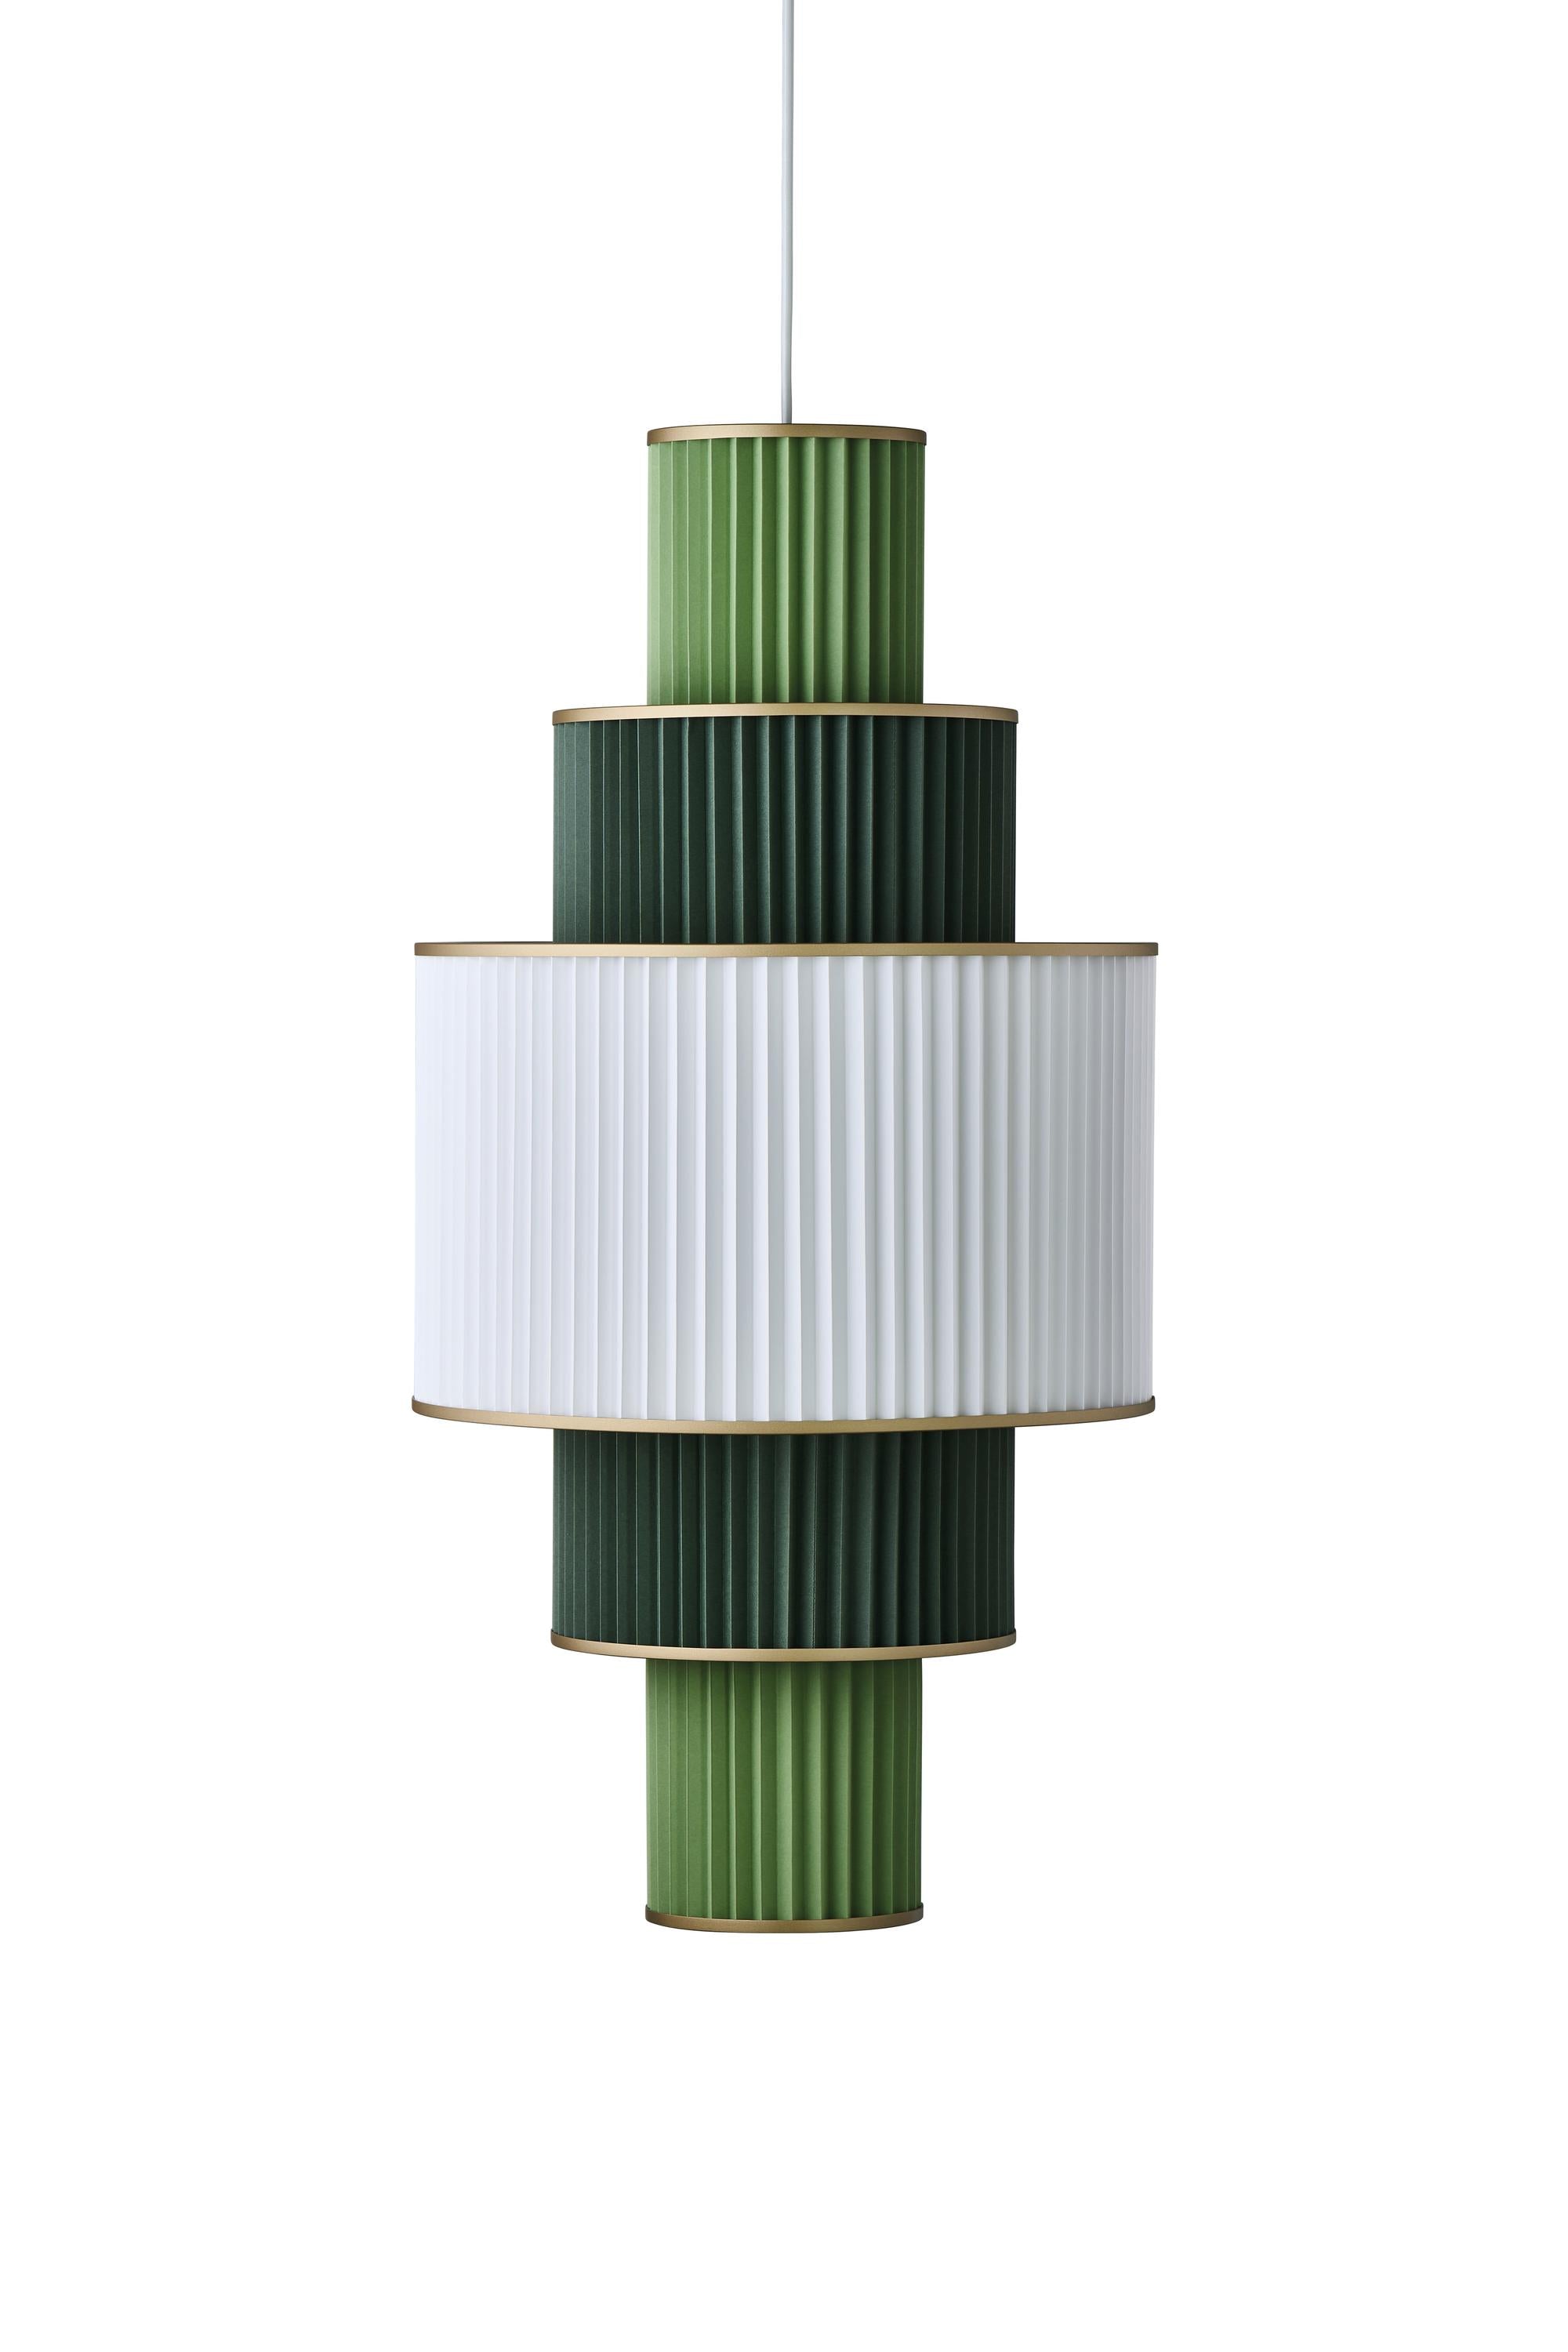 Le Klint Plivello Suspension Lamp Golden/White/Light Green med 5 nyanser (S M L M S)